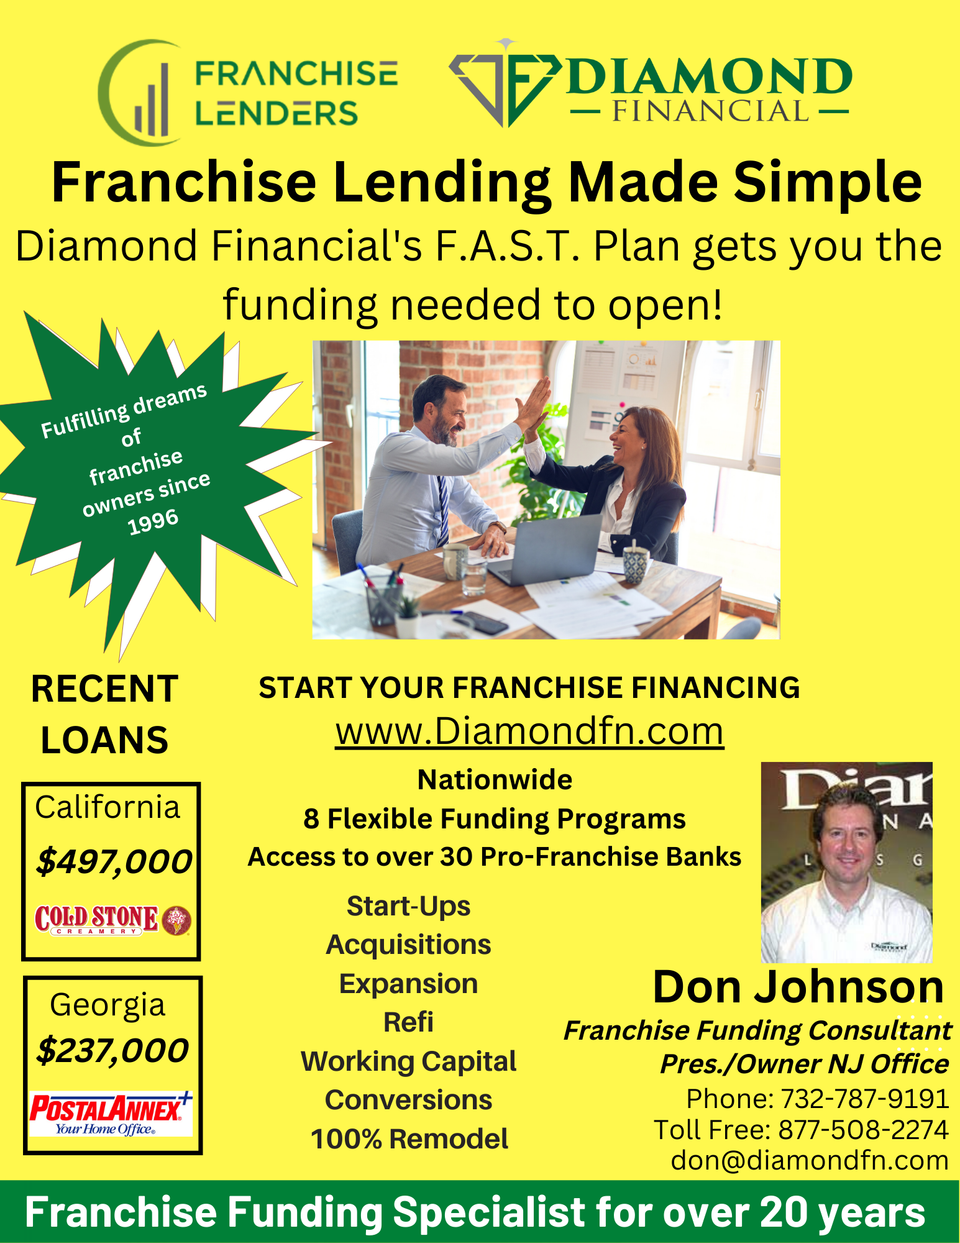 Franchise lenders flyer new web